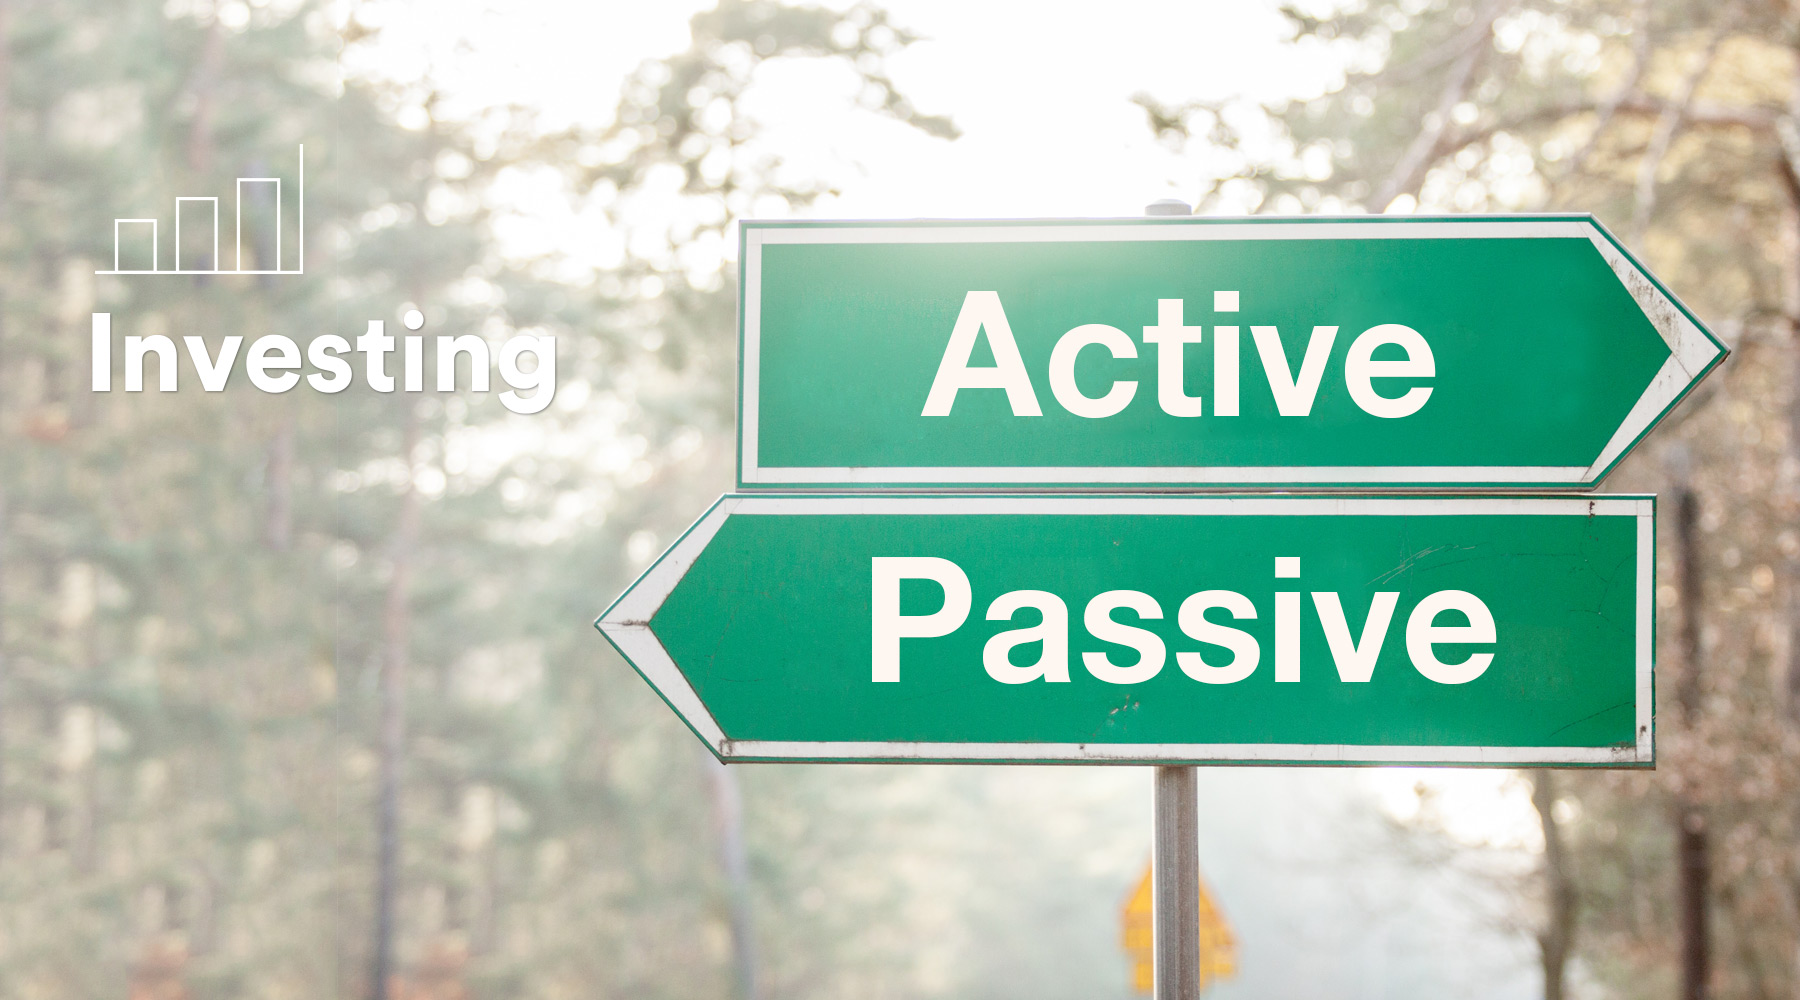 NEIRG active vs passive investing